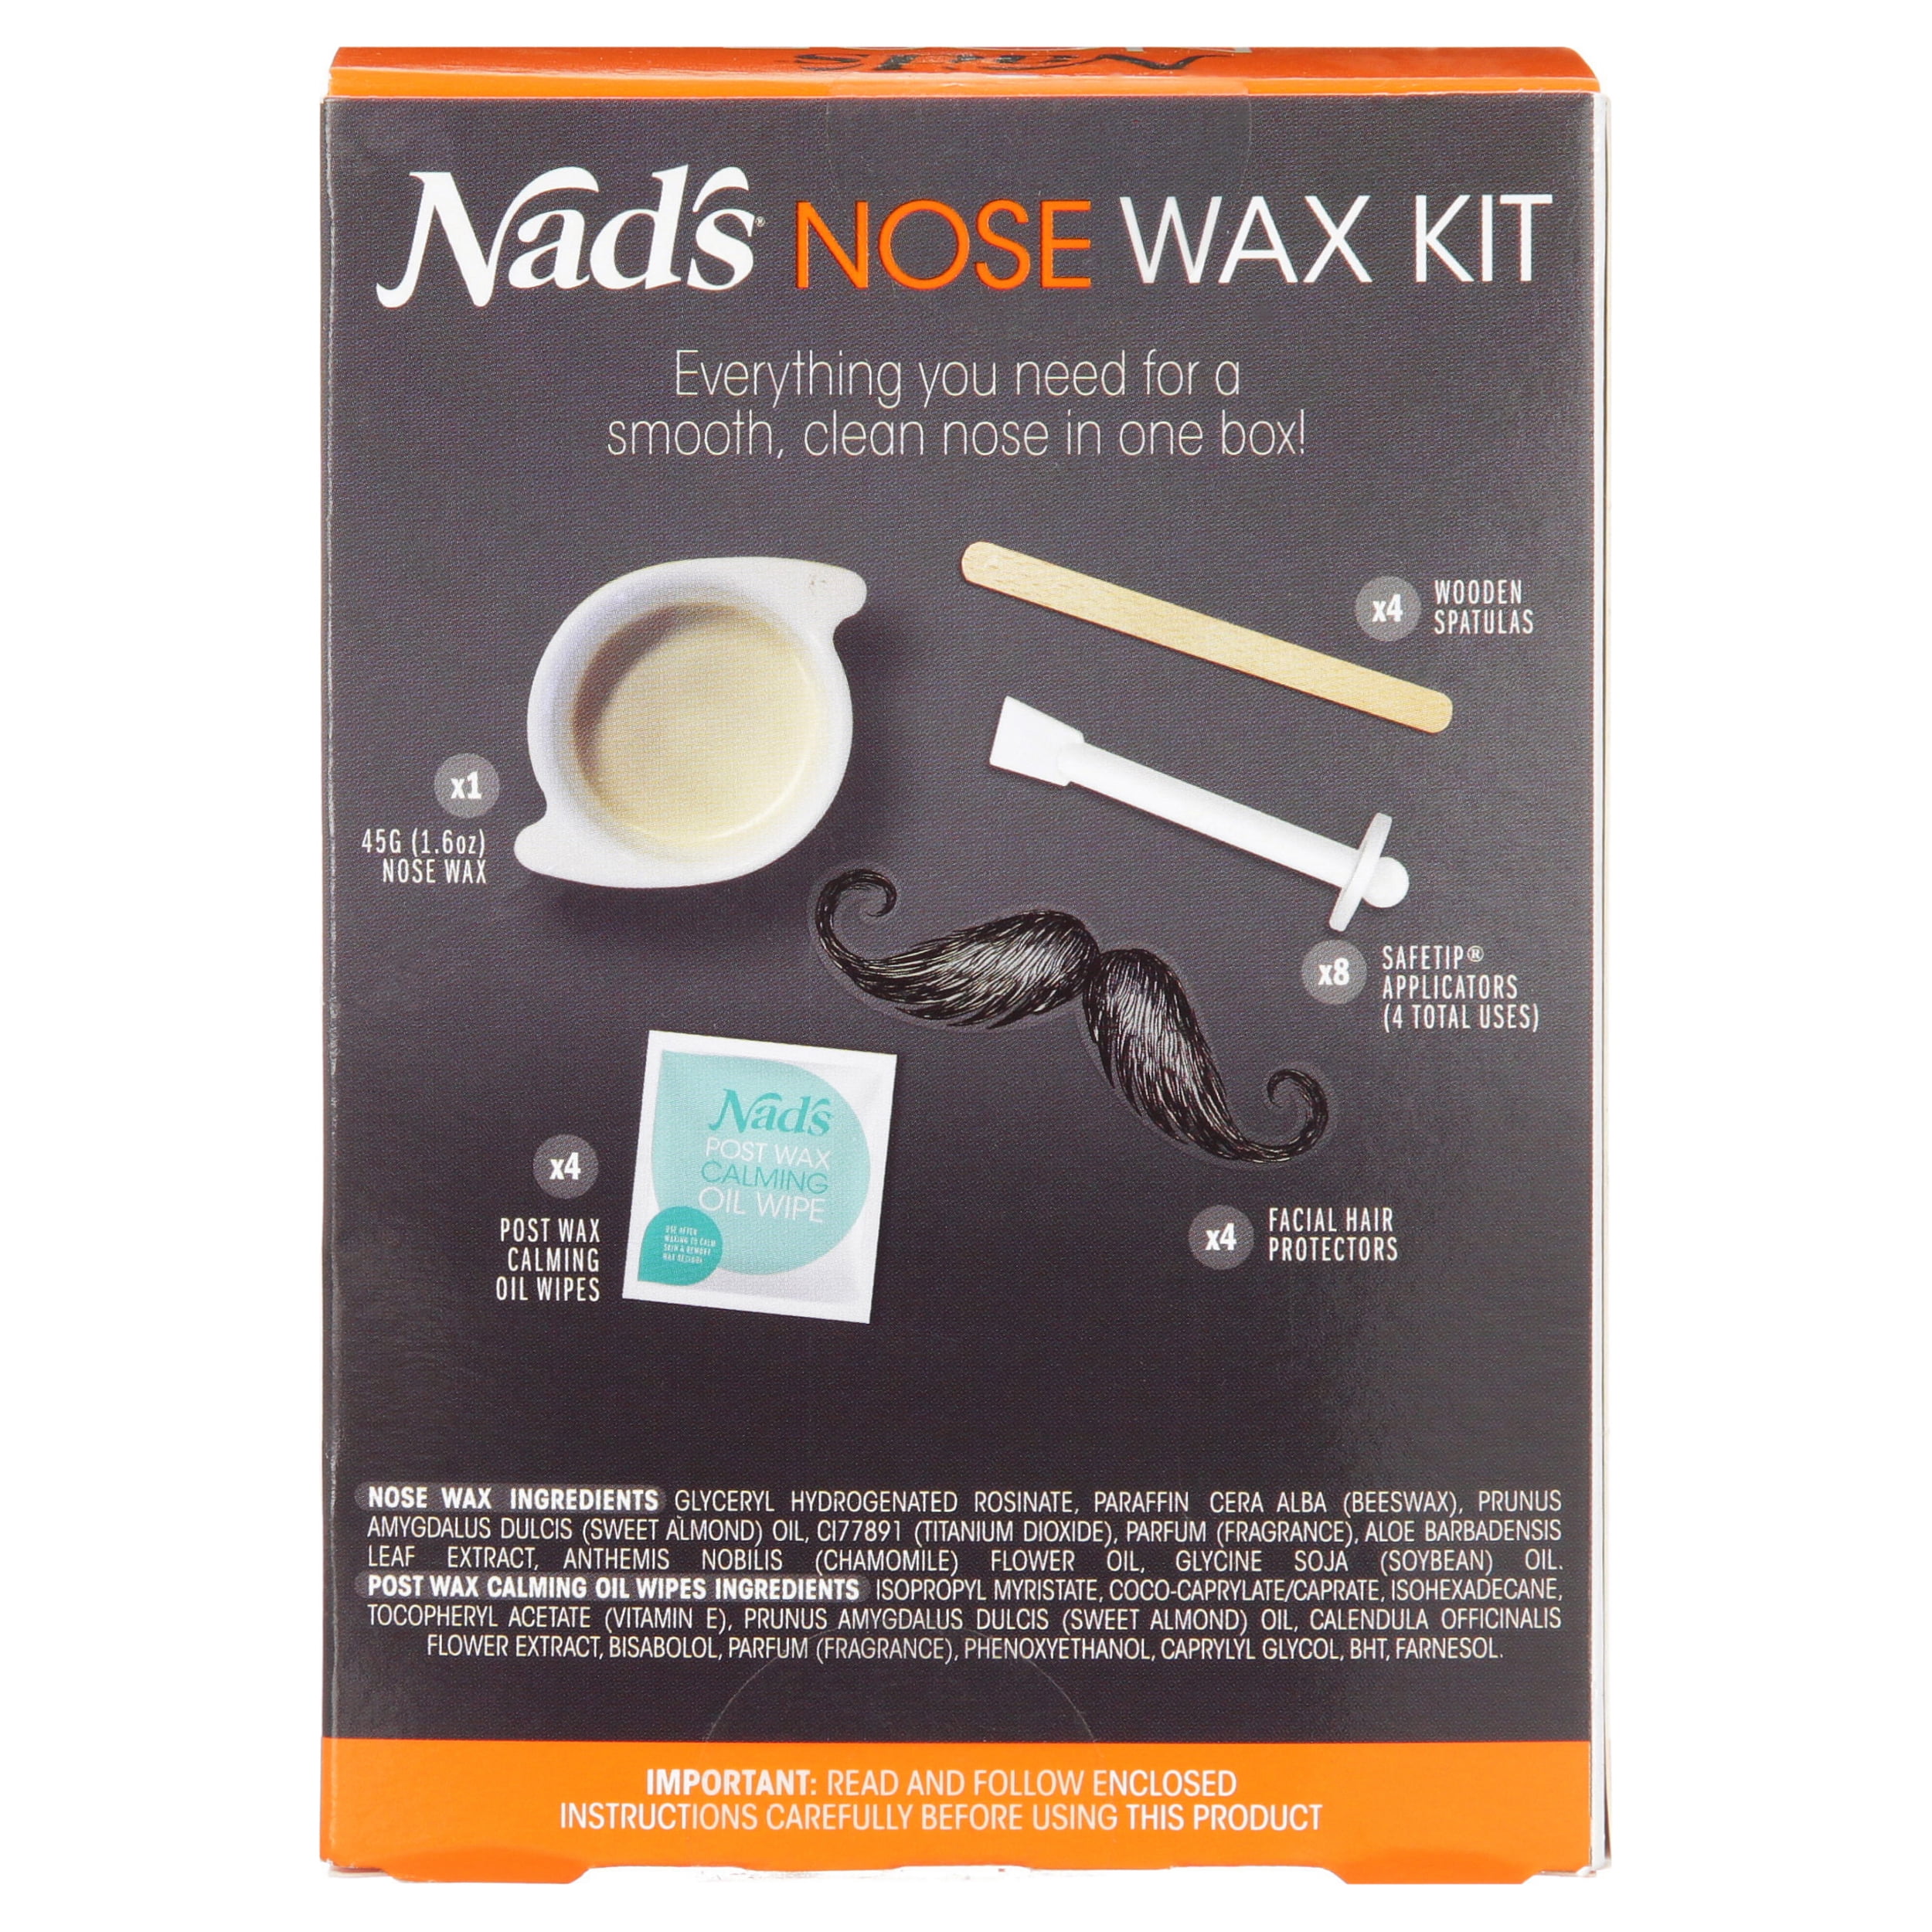 nose wax kit asda